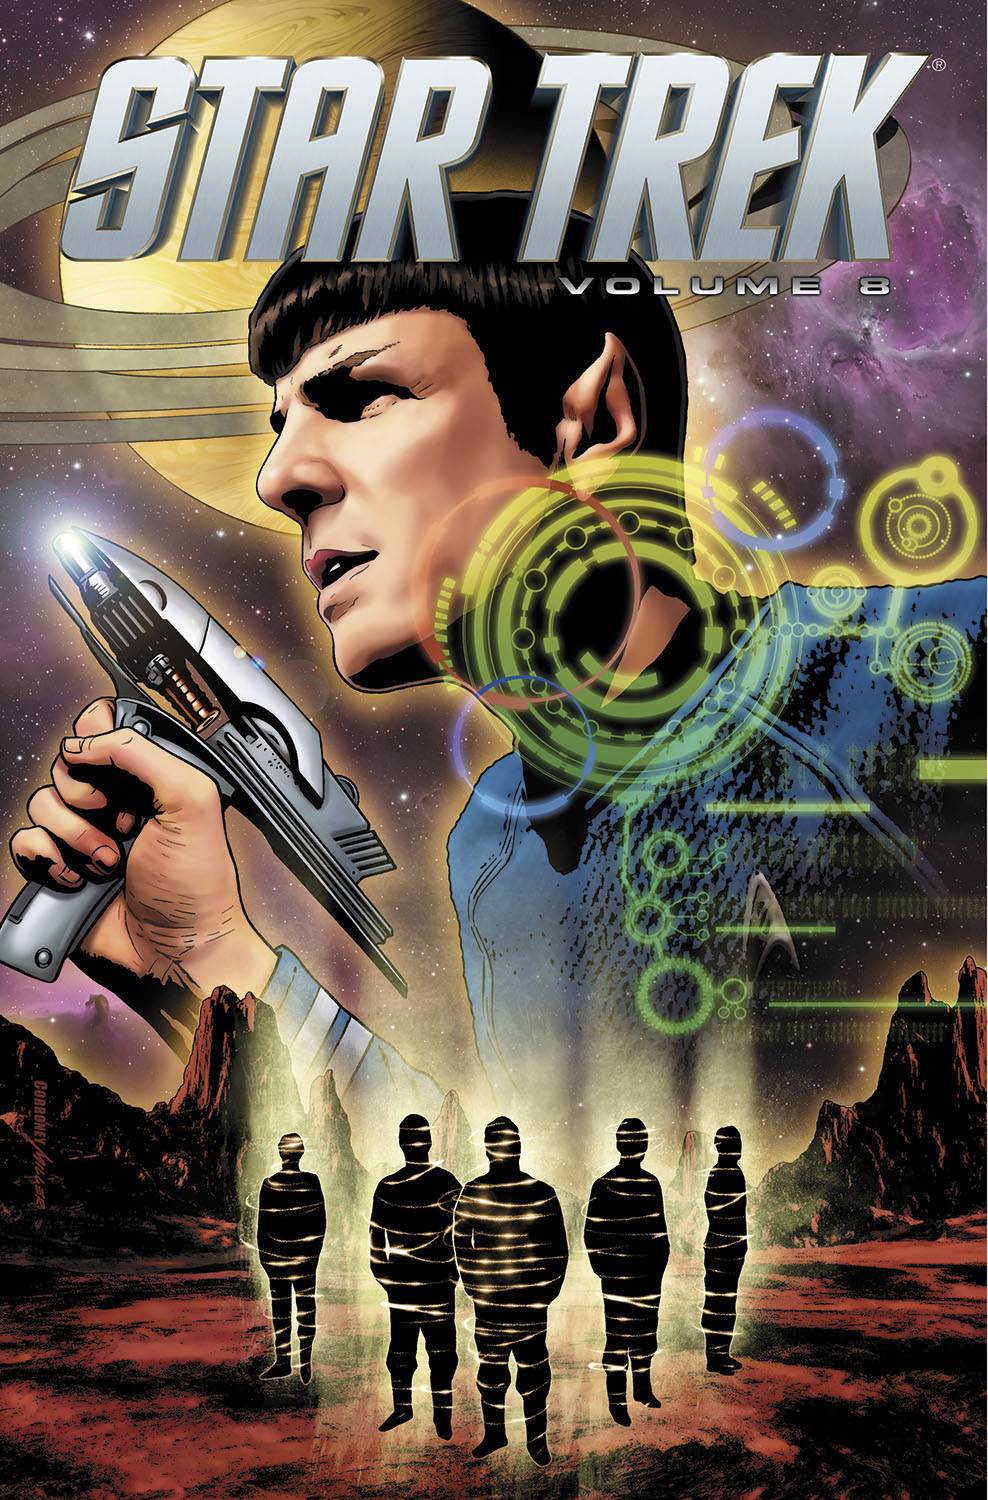 Star Trek Ongoing Graphic Novel Volume 8